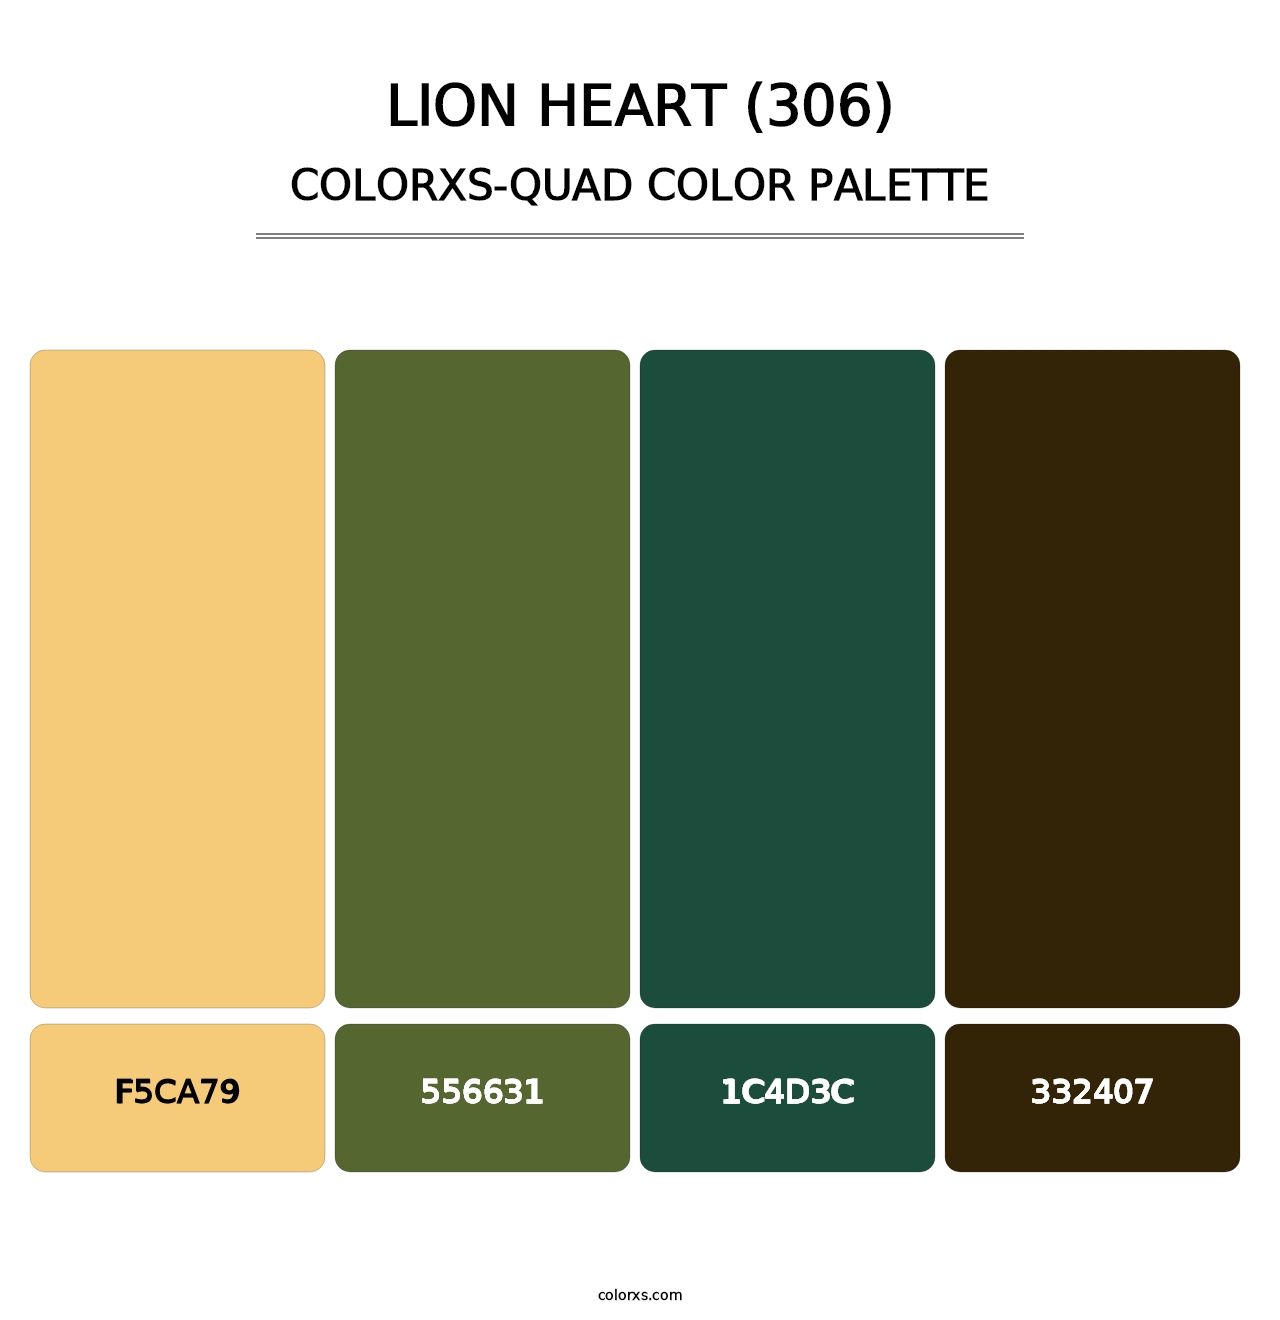 Lion Heart (306) - Colorxs Quad Palette